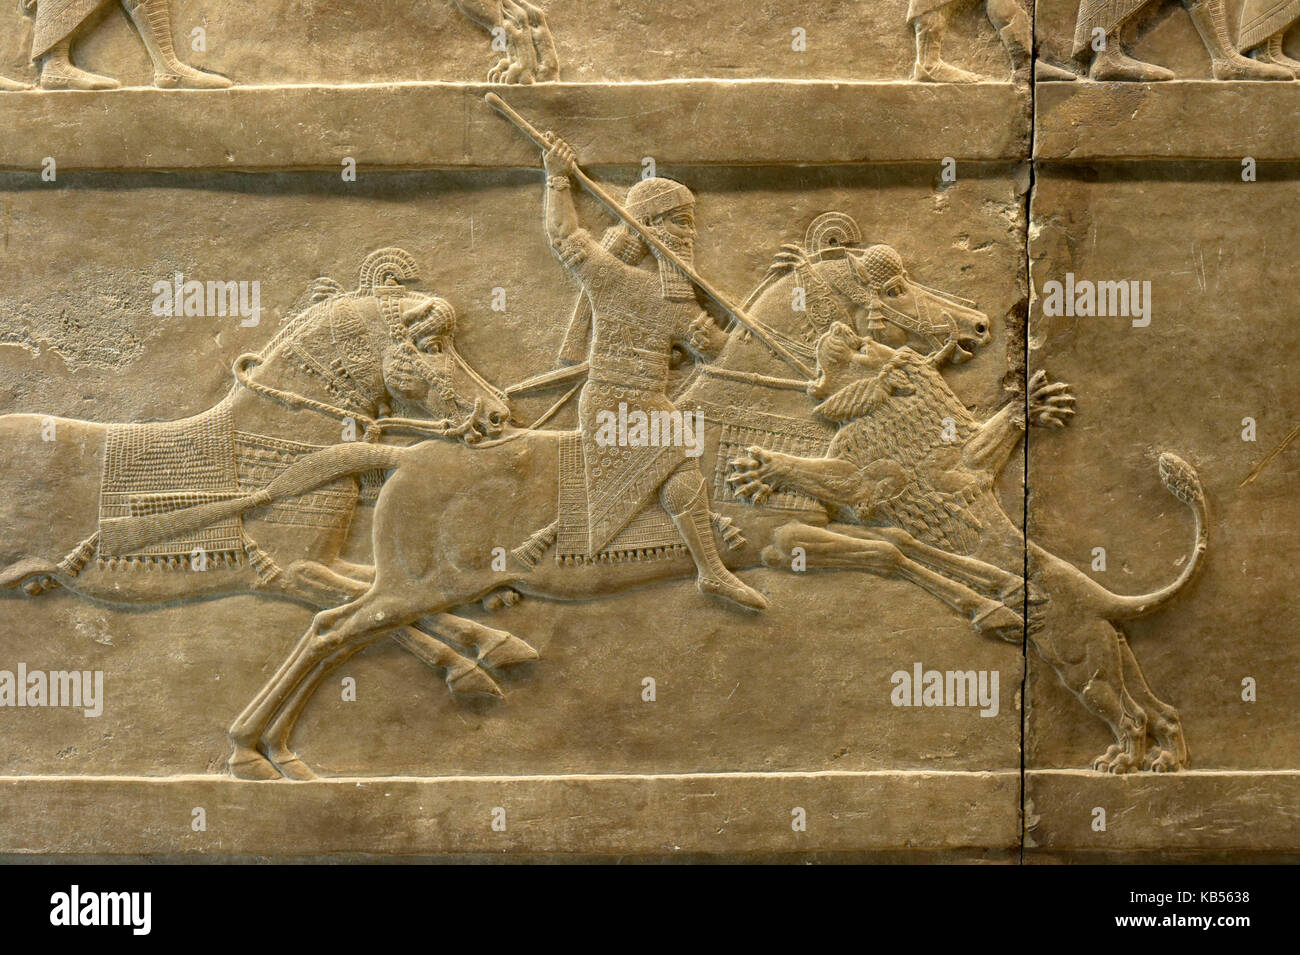 Royaume-uni, Londres, Bloomsbury, British museum, l'art assyrien antique chasse au lion, à cheval, à environ 645-635 bc Banque D'Images